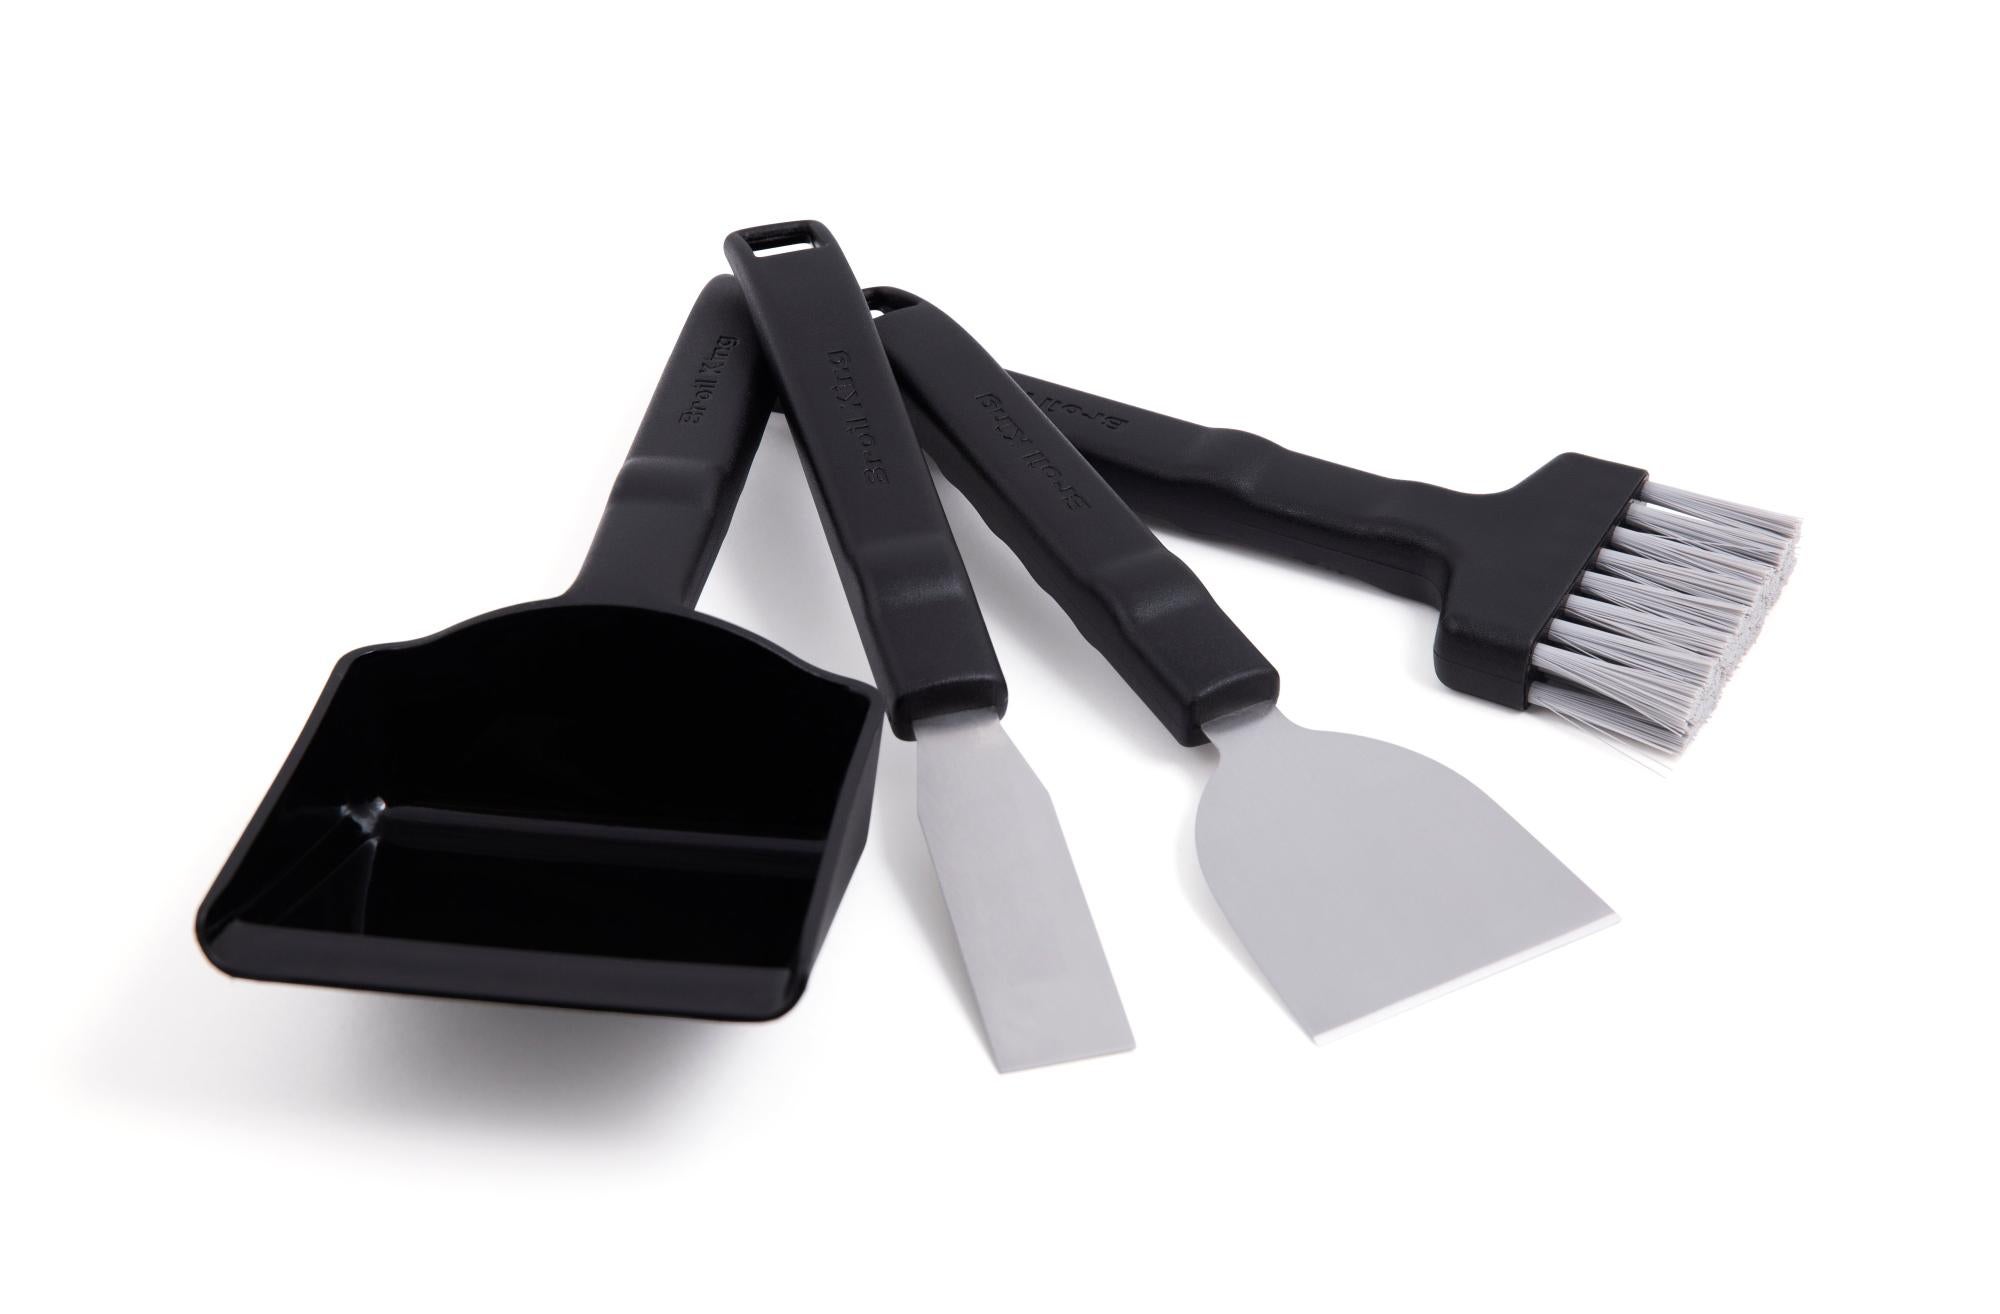 Kit de herramientas para limpieza de barbacoas broil king